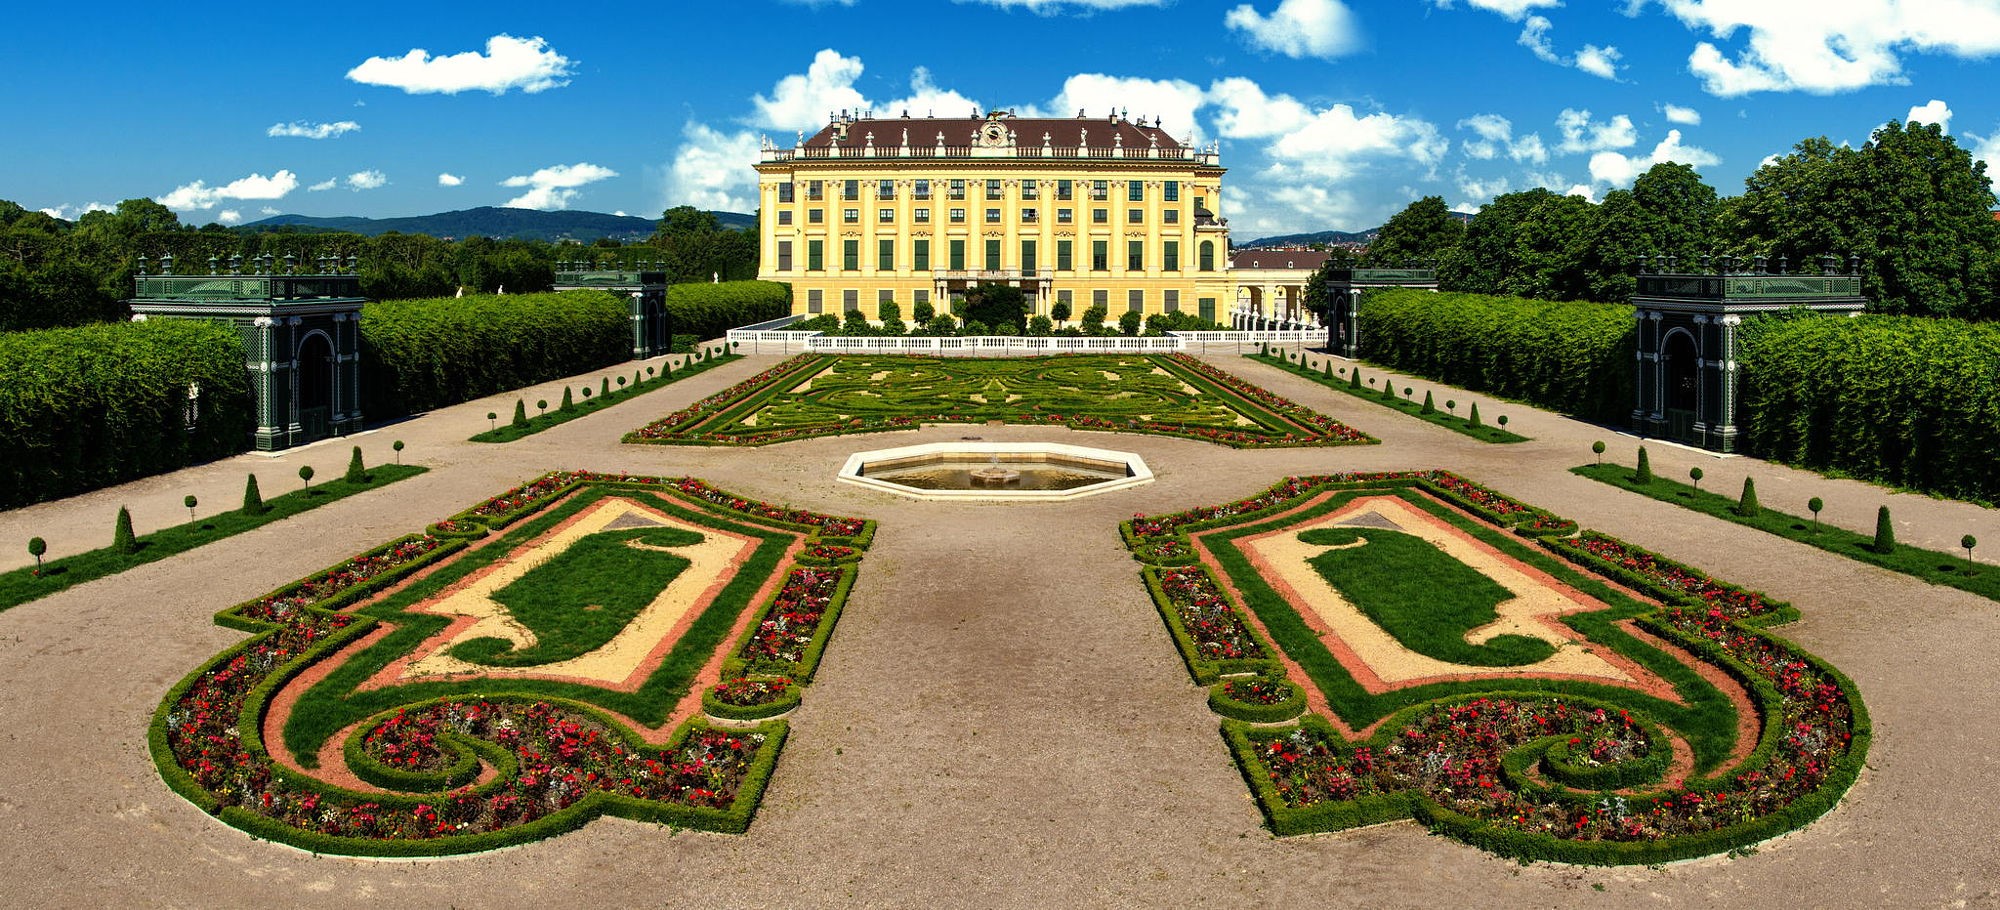 Cung điện Schönbrunn